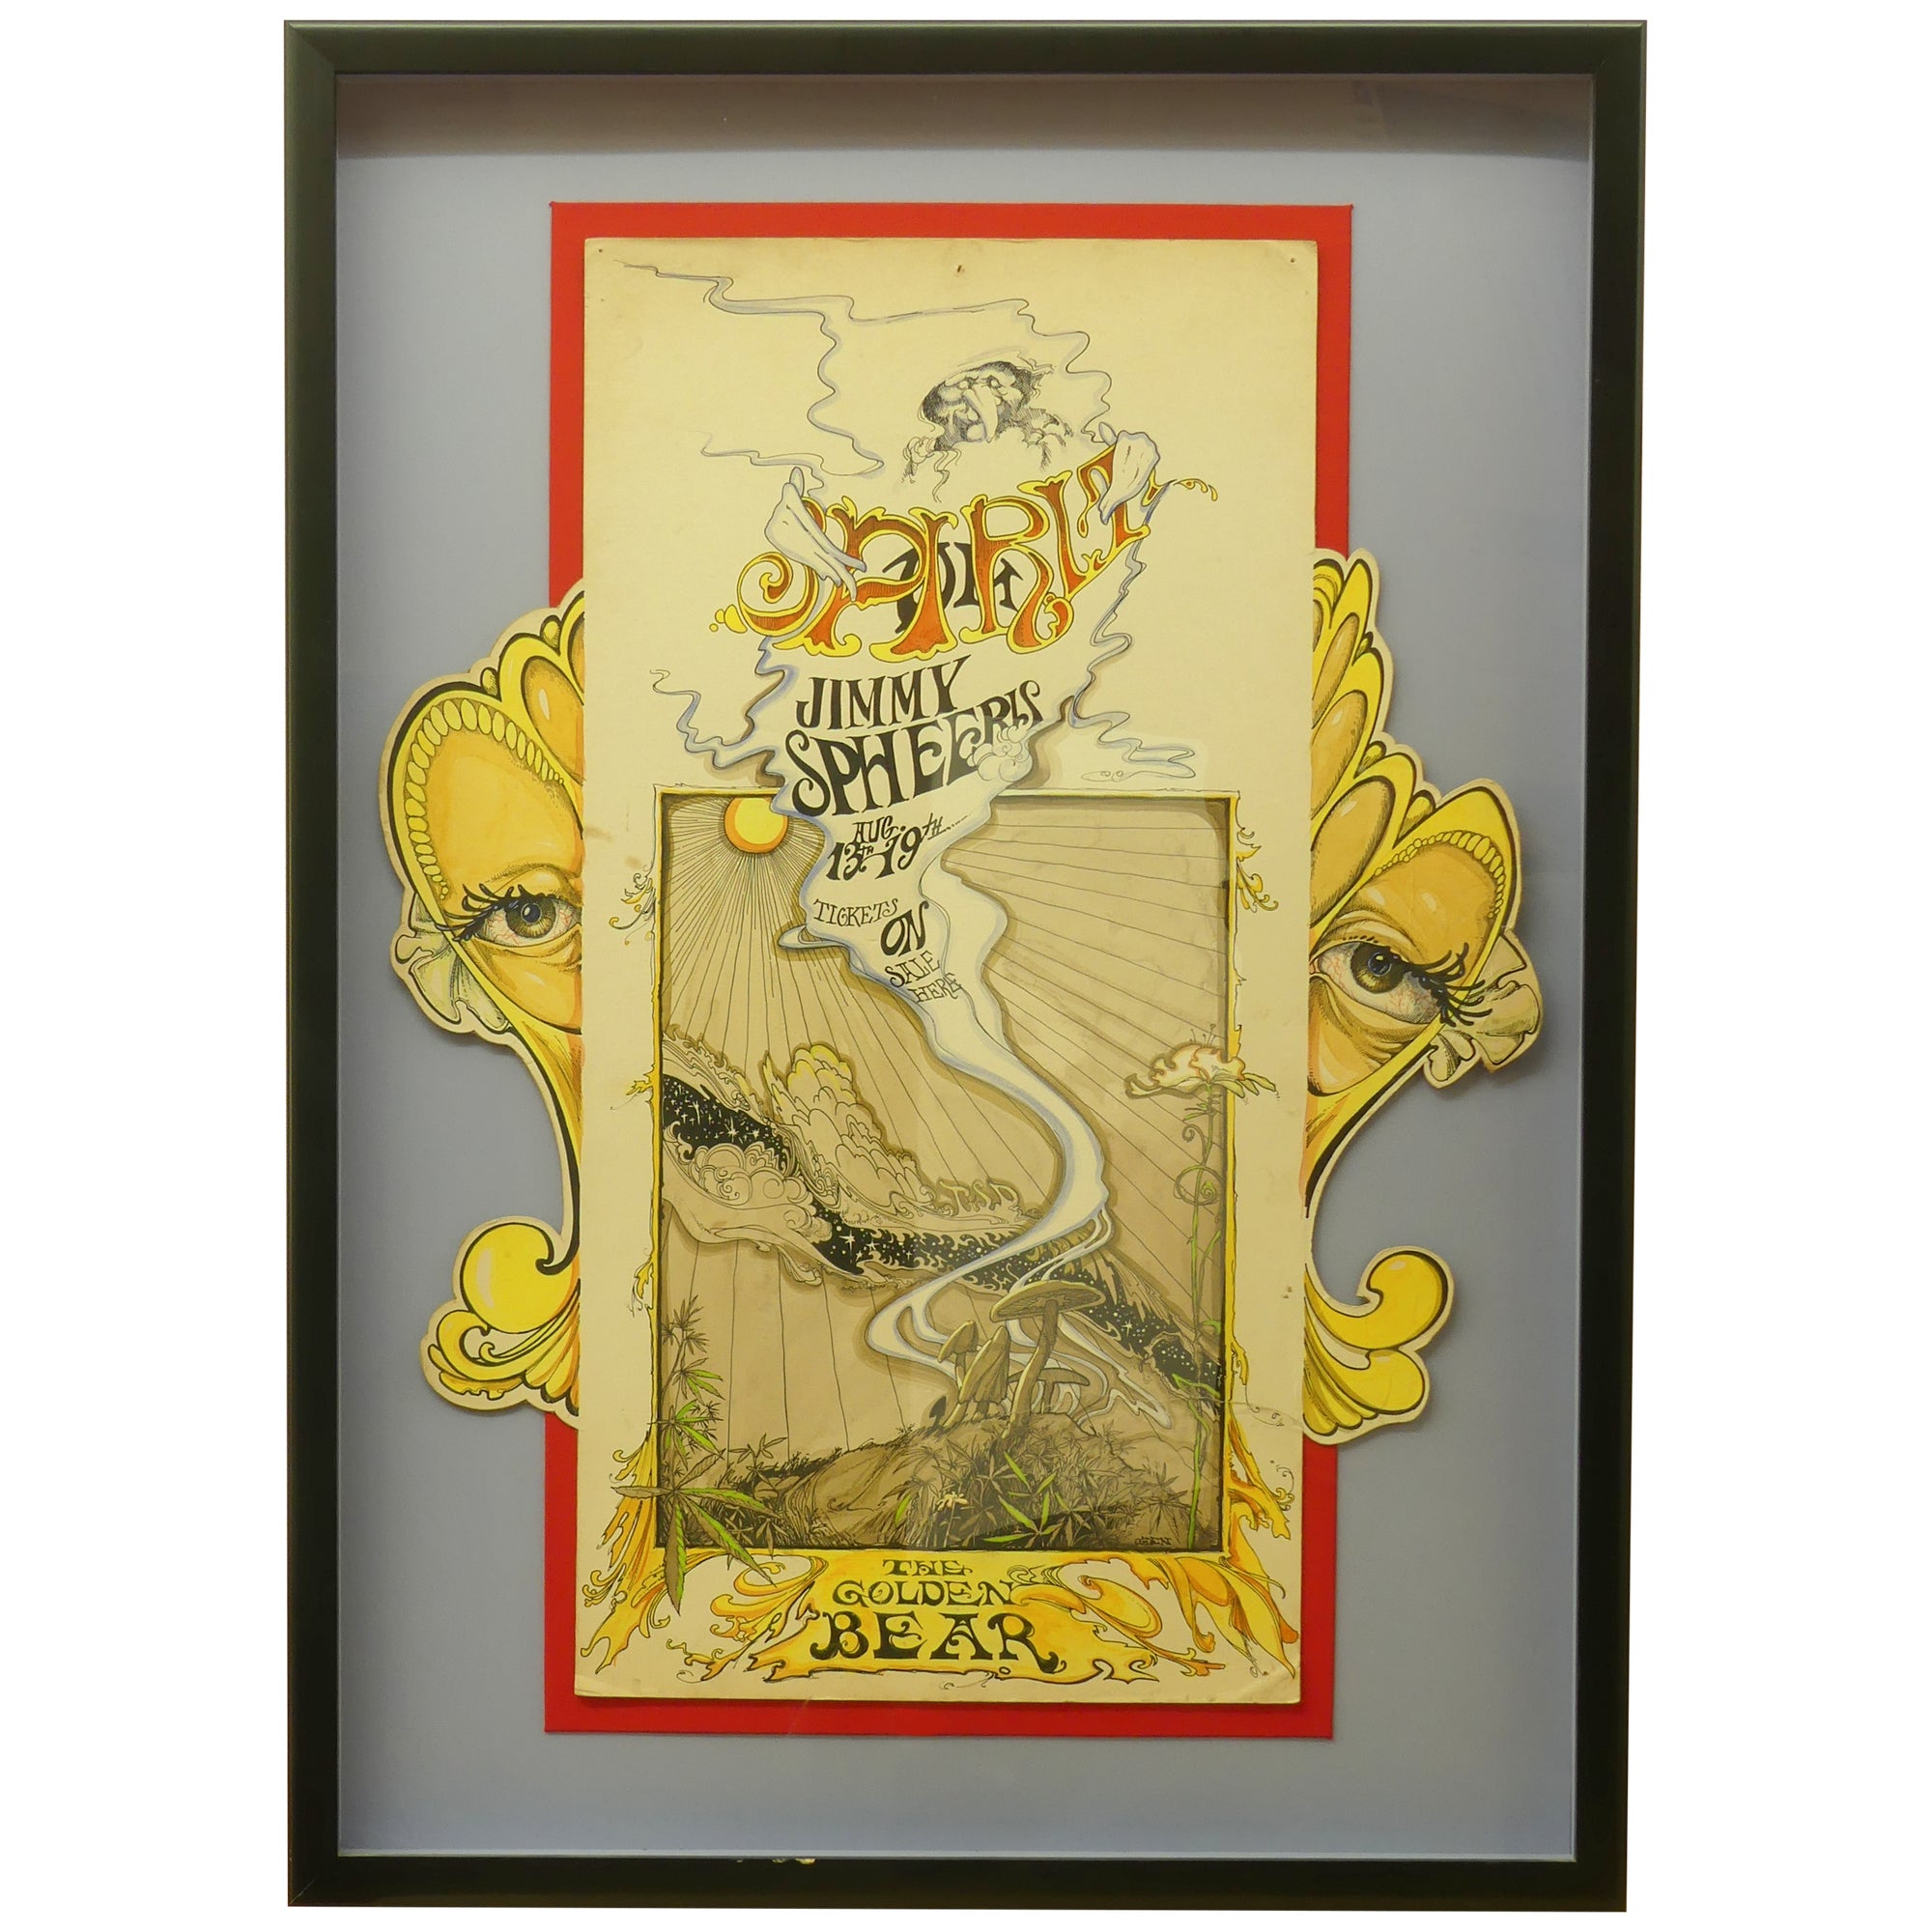 Original Rock Poster Spheeris Beach Bear, Huntington | Golden Ogden the for Jimmie Art / Bill Spirit at